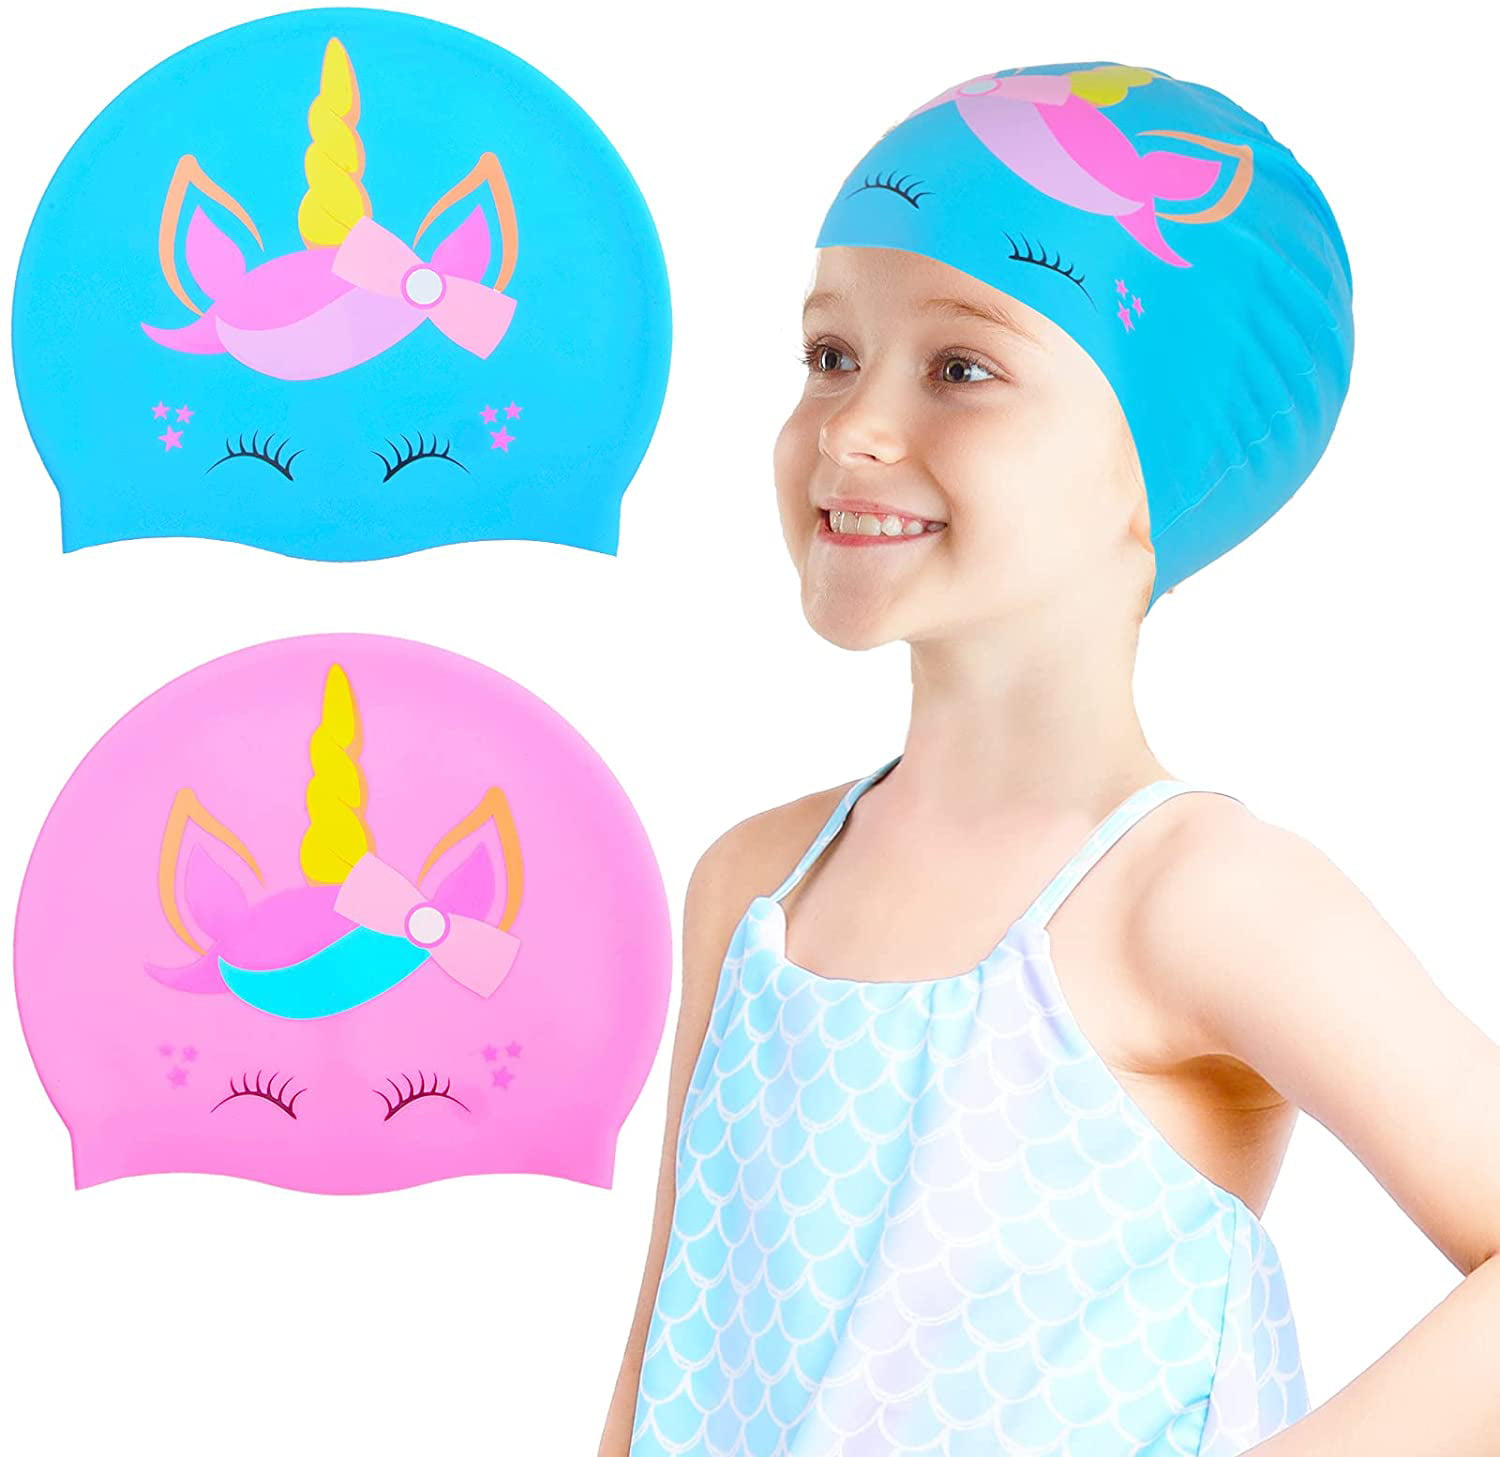 Elastic Cartoon Printed Swimming Caps For Long Hair Kids Protect Ears Hat B1 